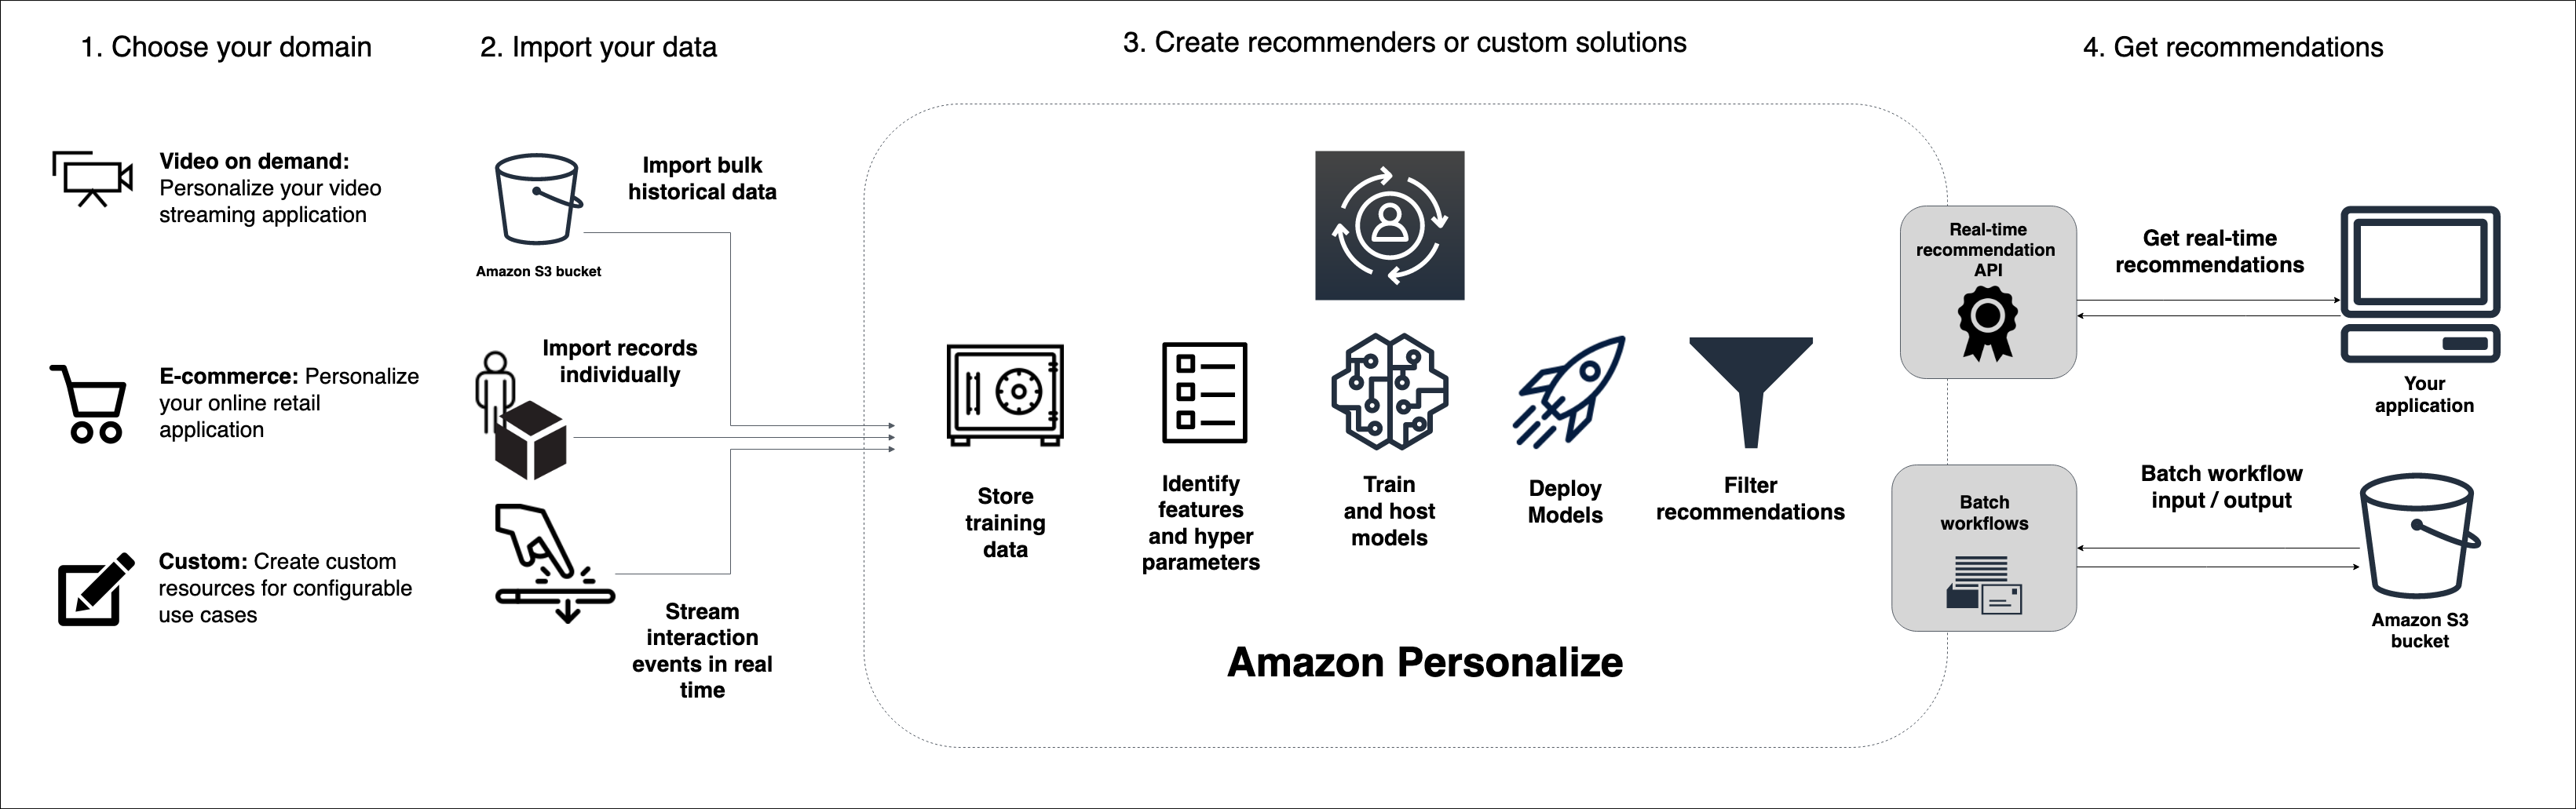 Describe el flujo de trabajo de Amazon Personalize, desde la importación de datos hasta el entrenamiento de un modelo y la obtención de recomendaciones.